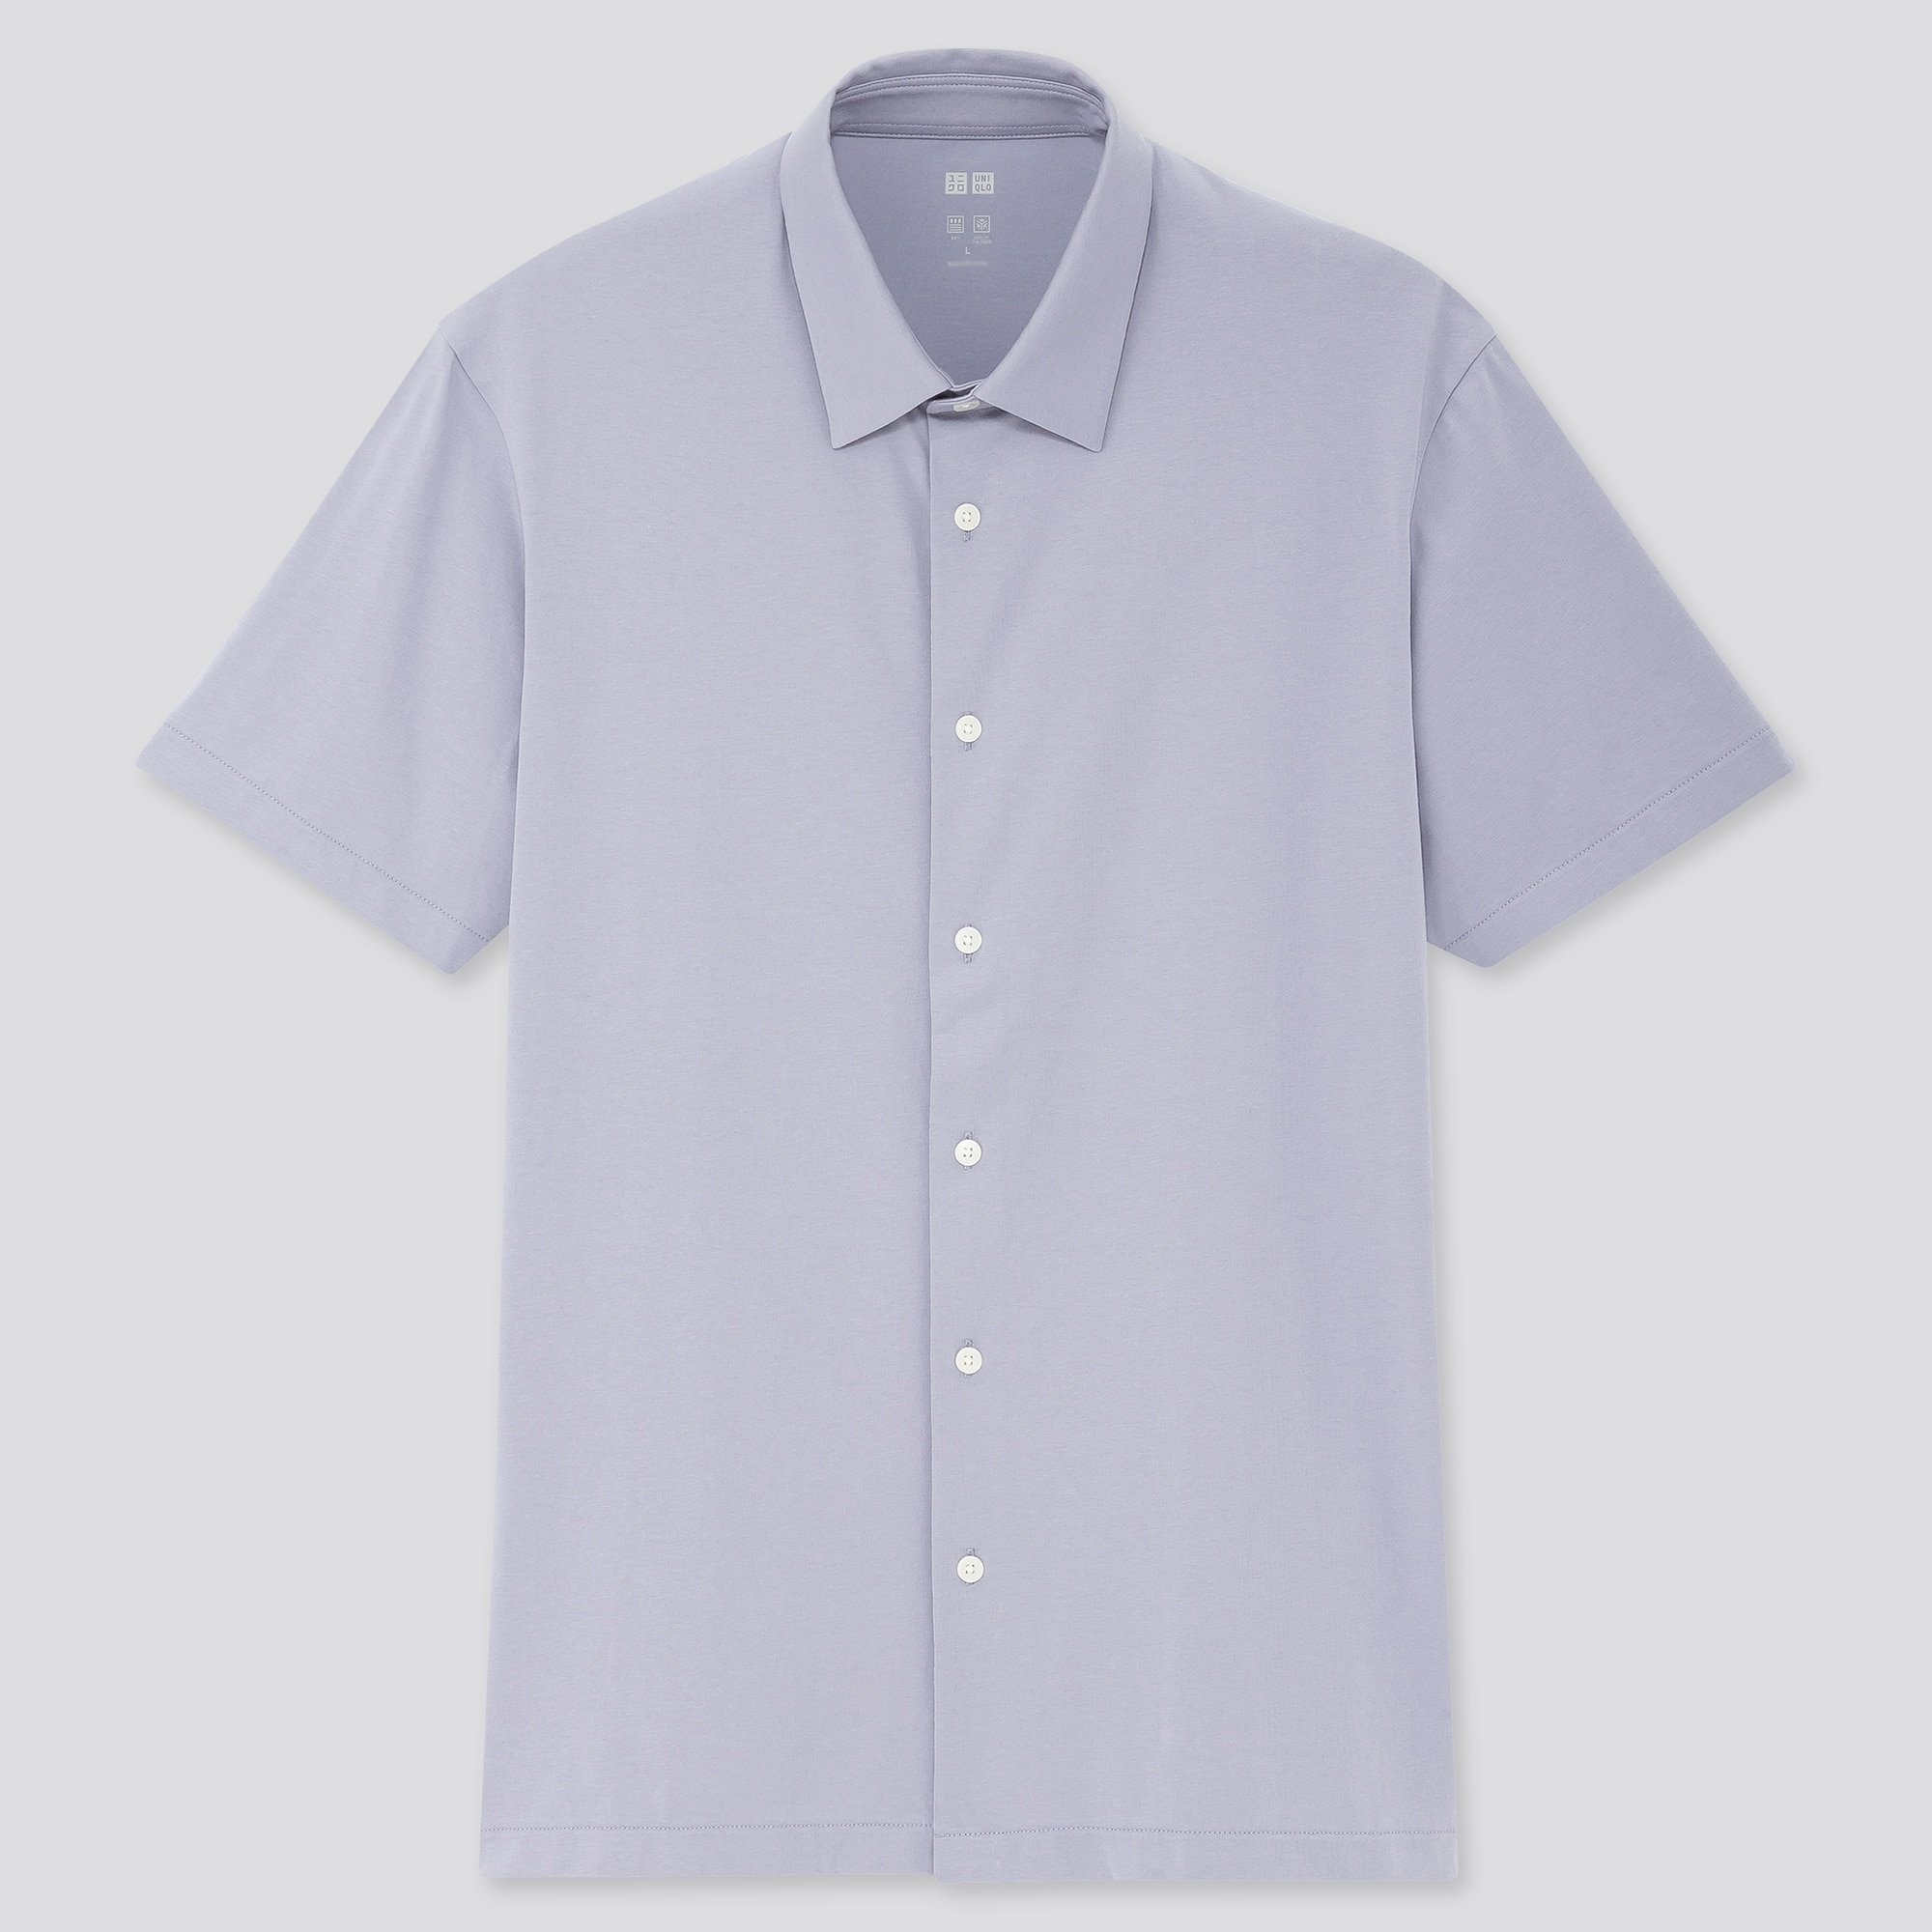 Uniqlo Mens Shirts  Men Extra Fine Cotton Broadcloth Shirt Grandad  Collar White  Iniziative Immobiliari